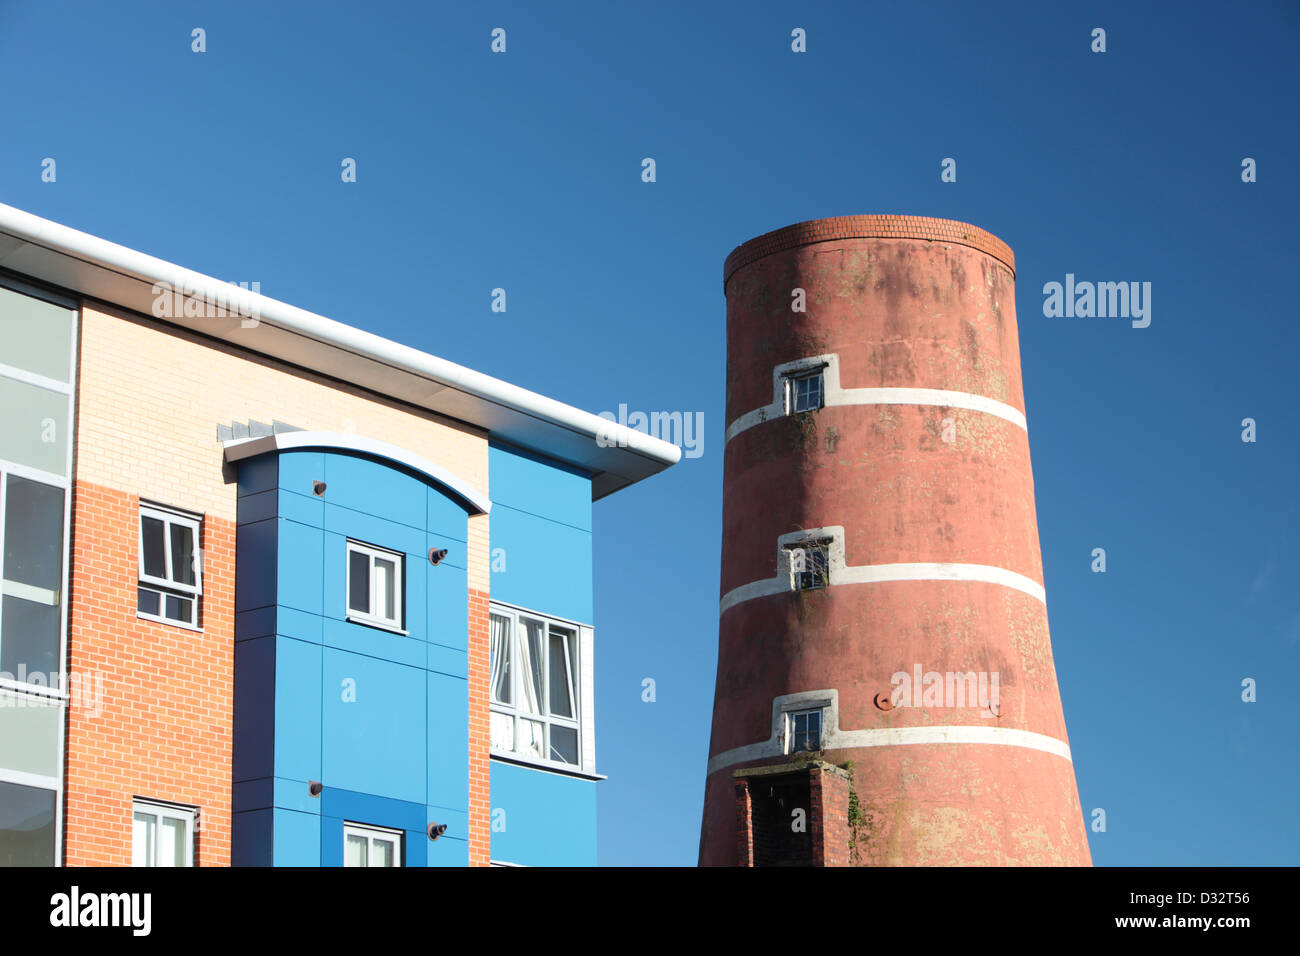 Nuovi blocchi di appartamenti e di un vecchio mulino a vento a Preston, Lancashire, Regno Unito. Foto Stock